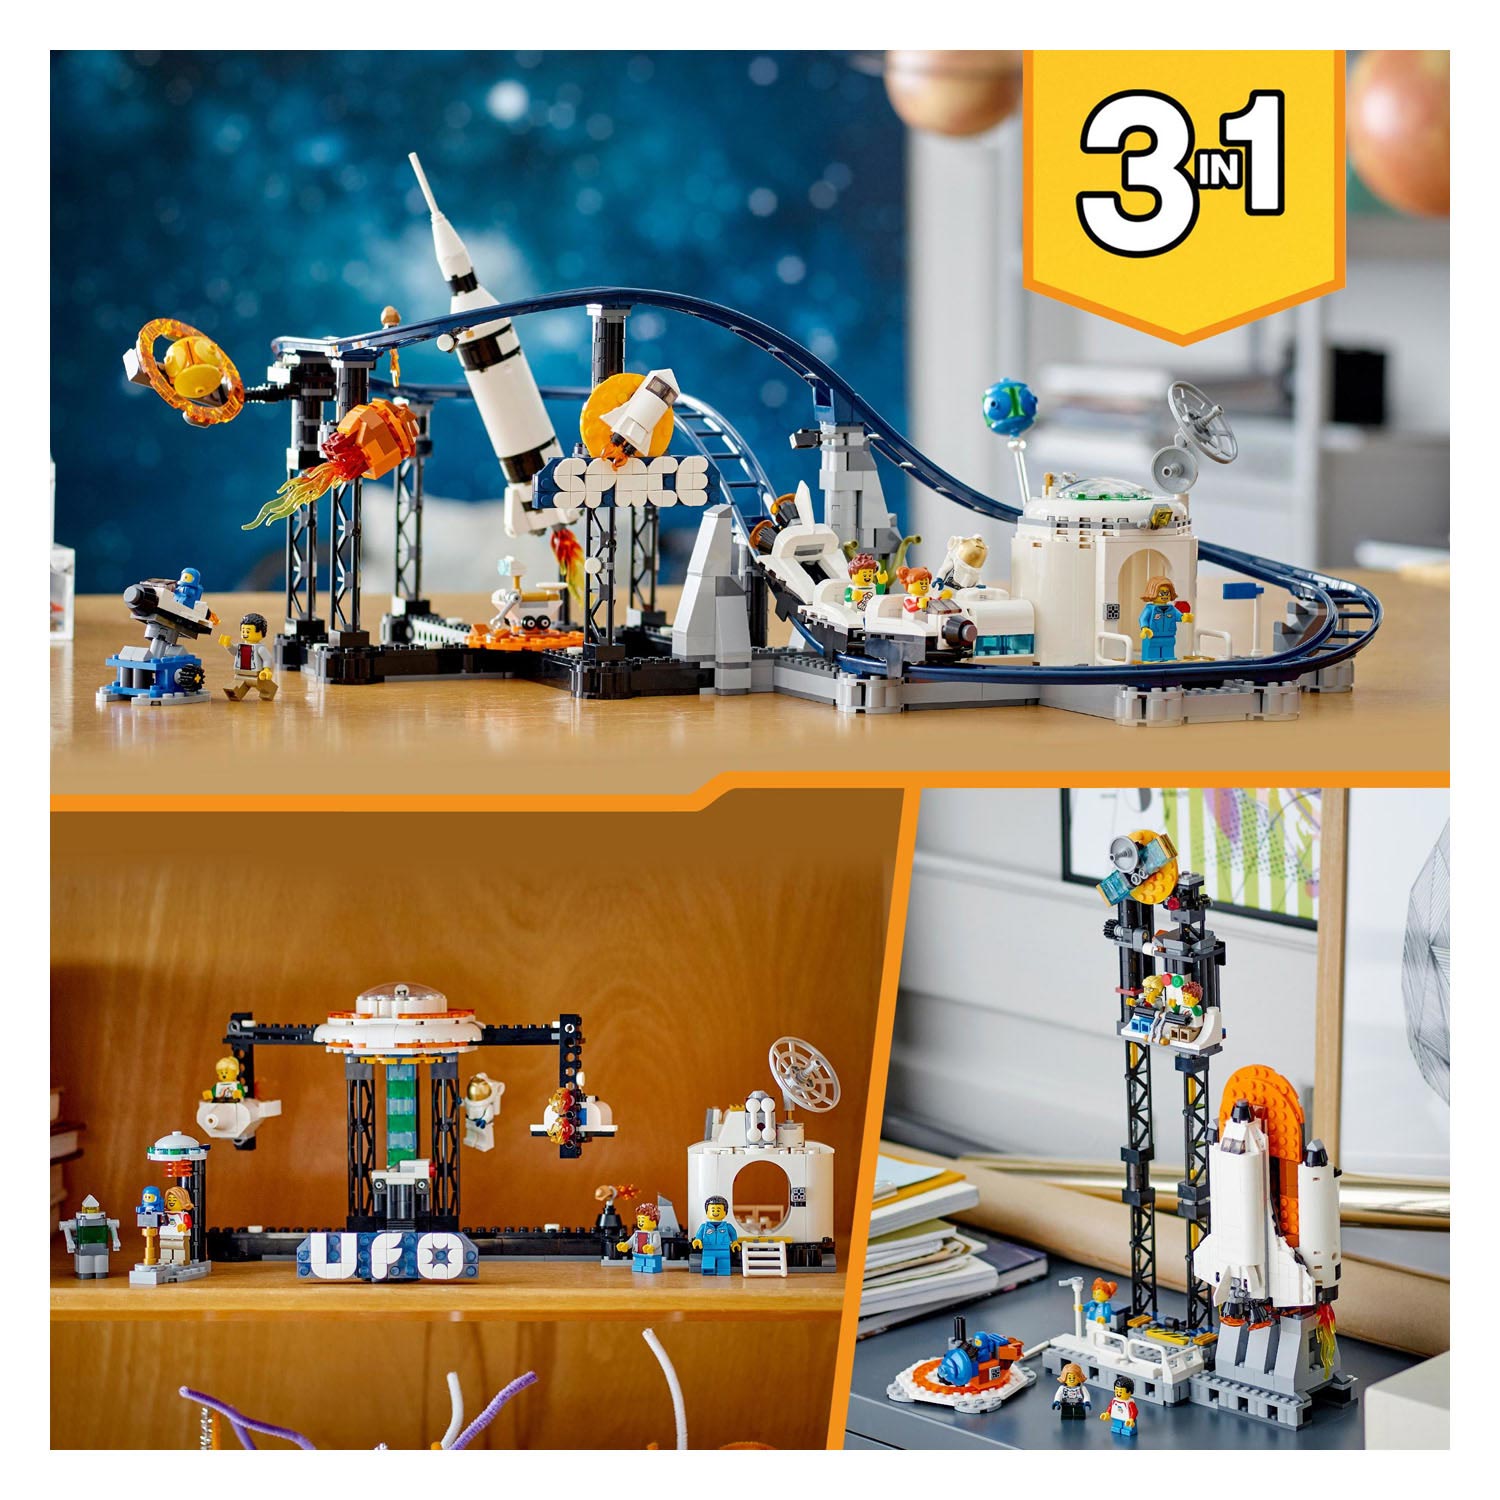 LEGO Creator 31142 Les montagnes russes de l'espace